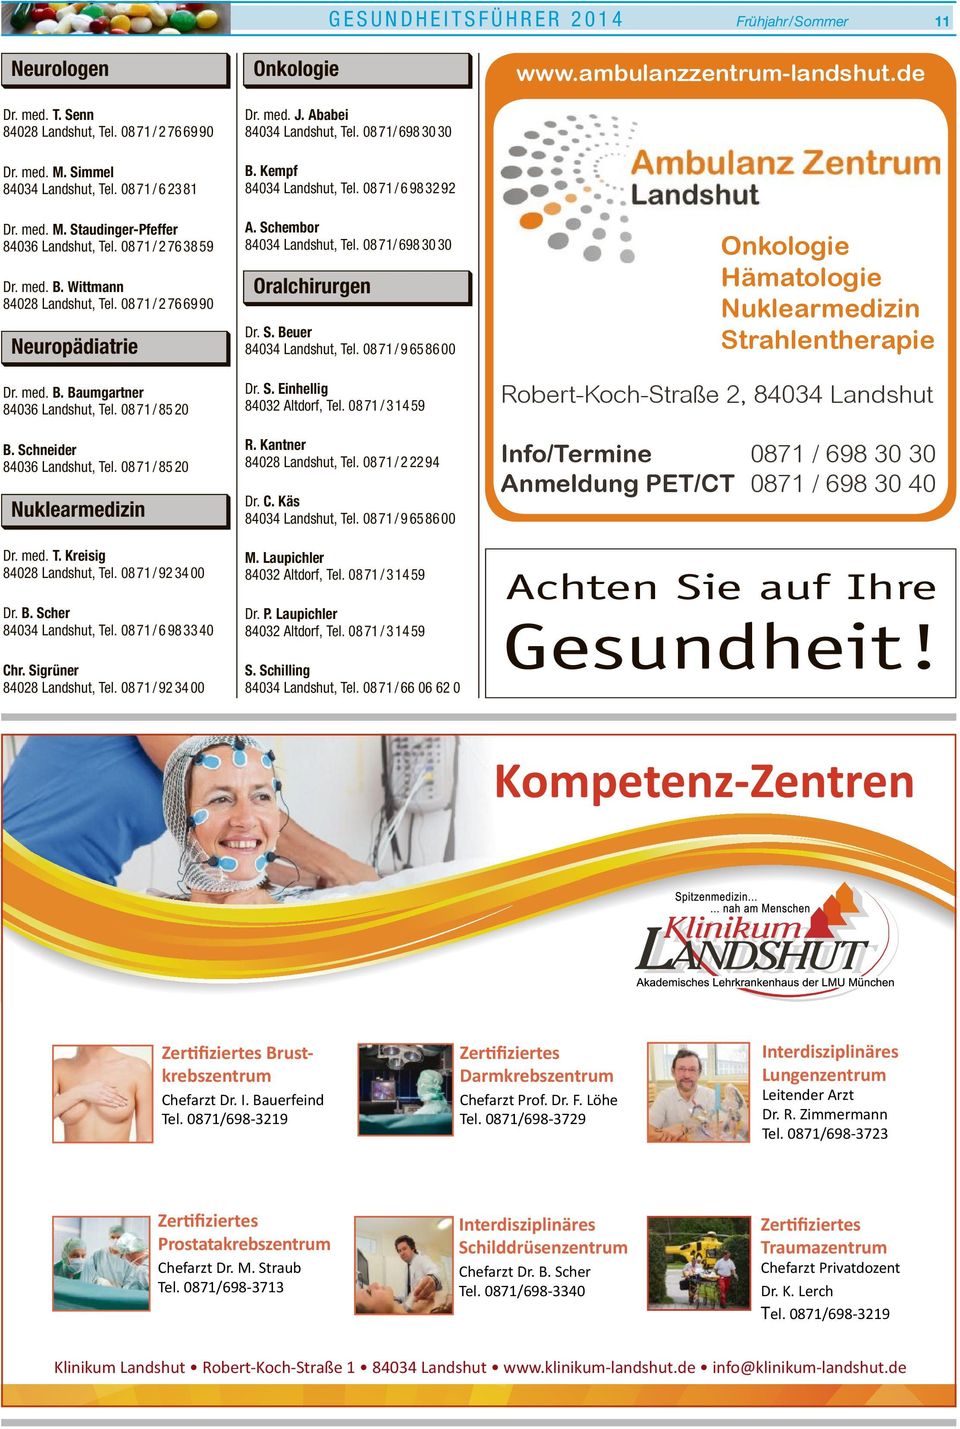 Kreisig 84028 Landshut, Tel. 08 71 /923400 Dr. B. Scher 84034 Landshut, Tel. 08 71 /6983340 Chr. Sigrüner 84028 Landshut, Tel. 08 71 /923400 Onkologie J. Ababei 84034 Landshut, Tel.